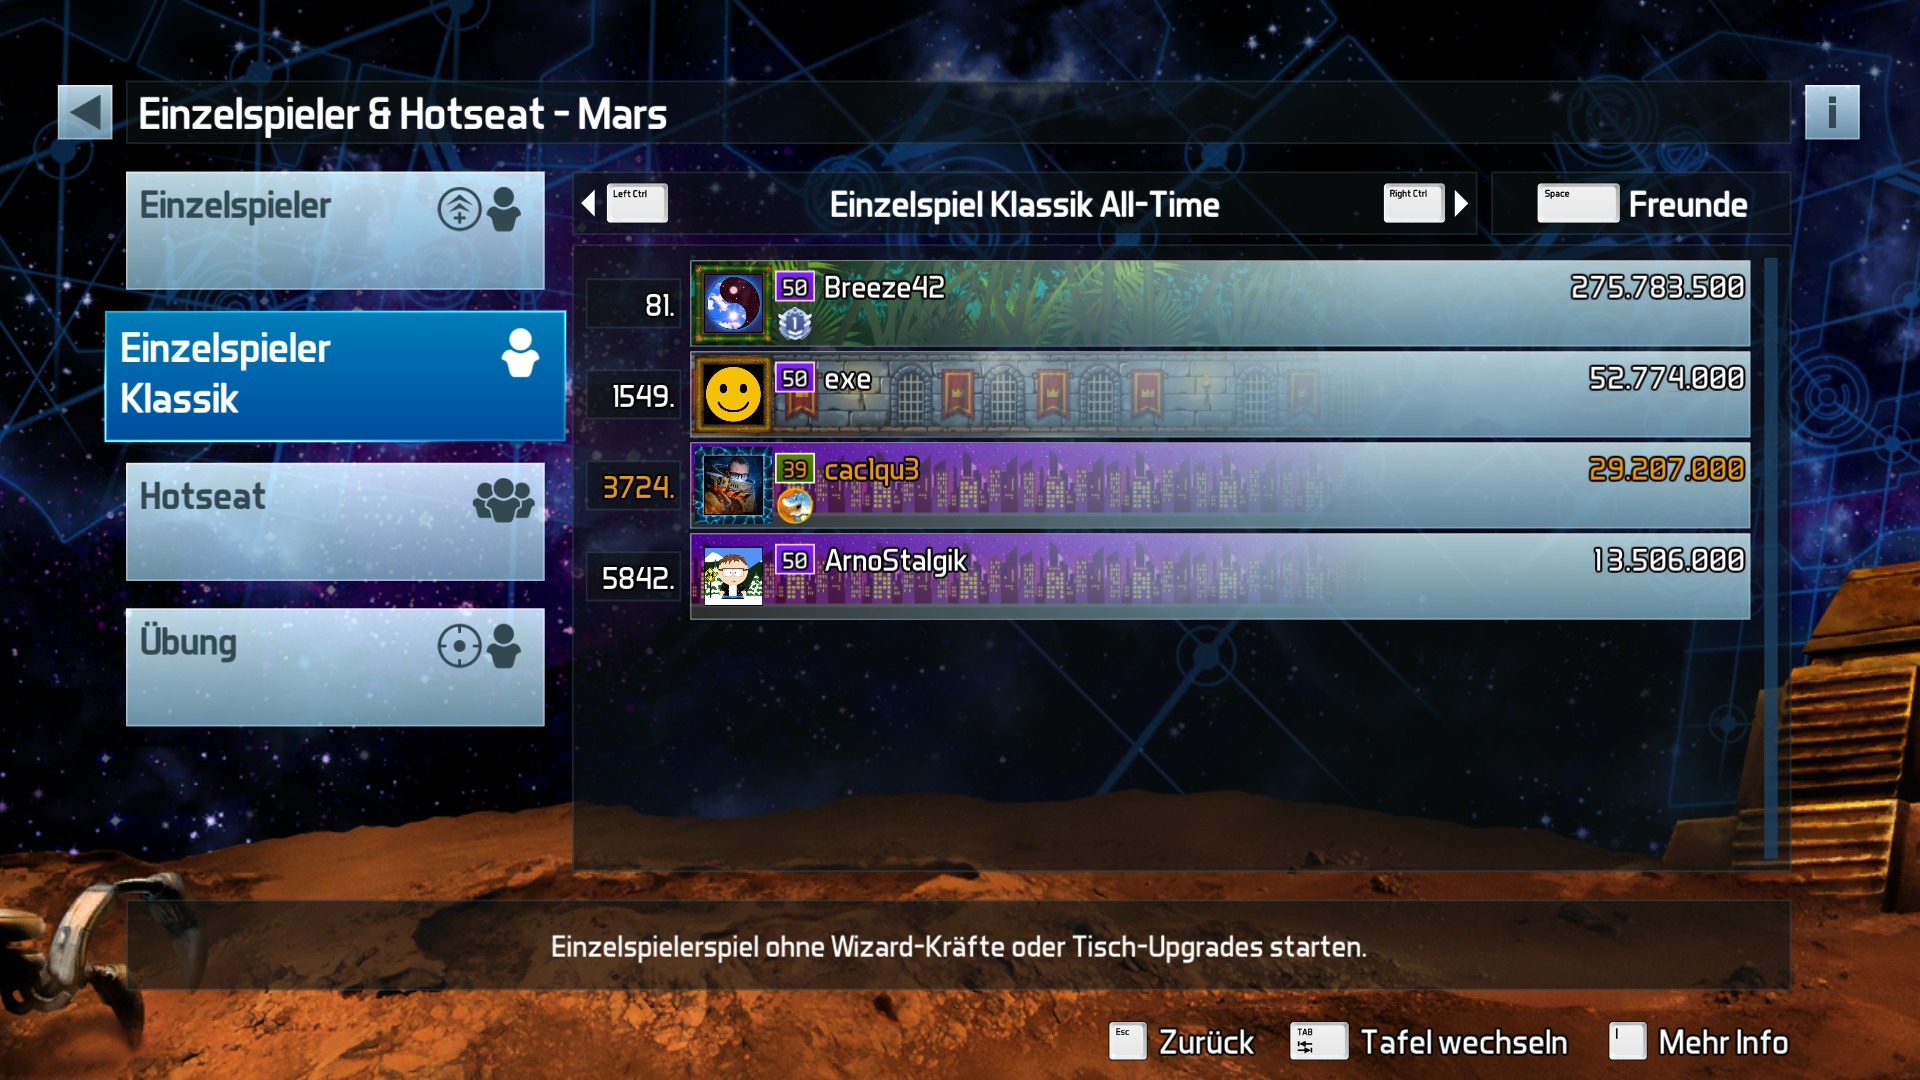 e2e4: Pinball FX3: Mars [Classic] (PC) 29,207,000 points on 2022-05-16 00:22:41